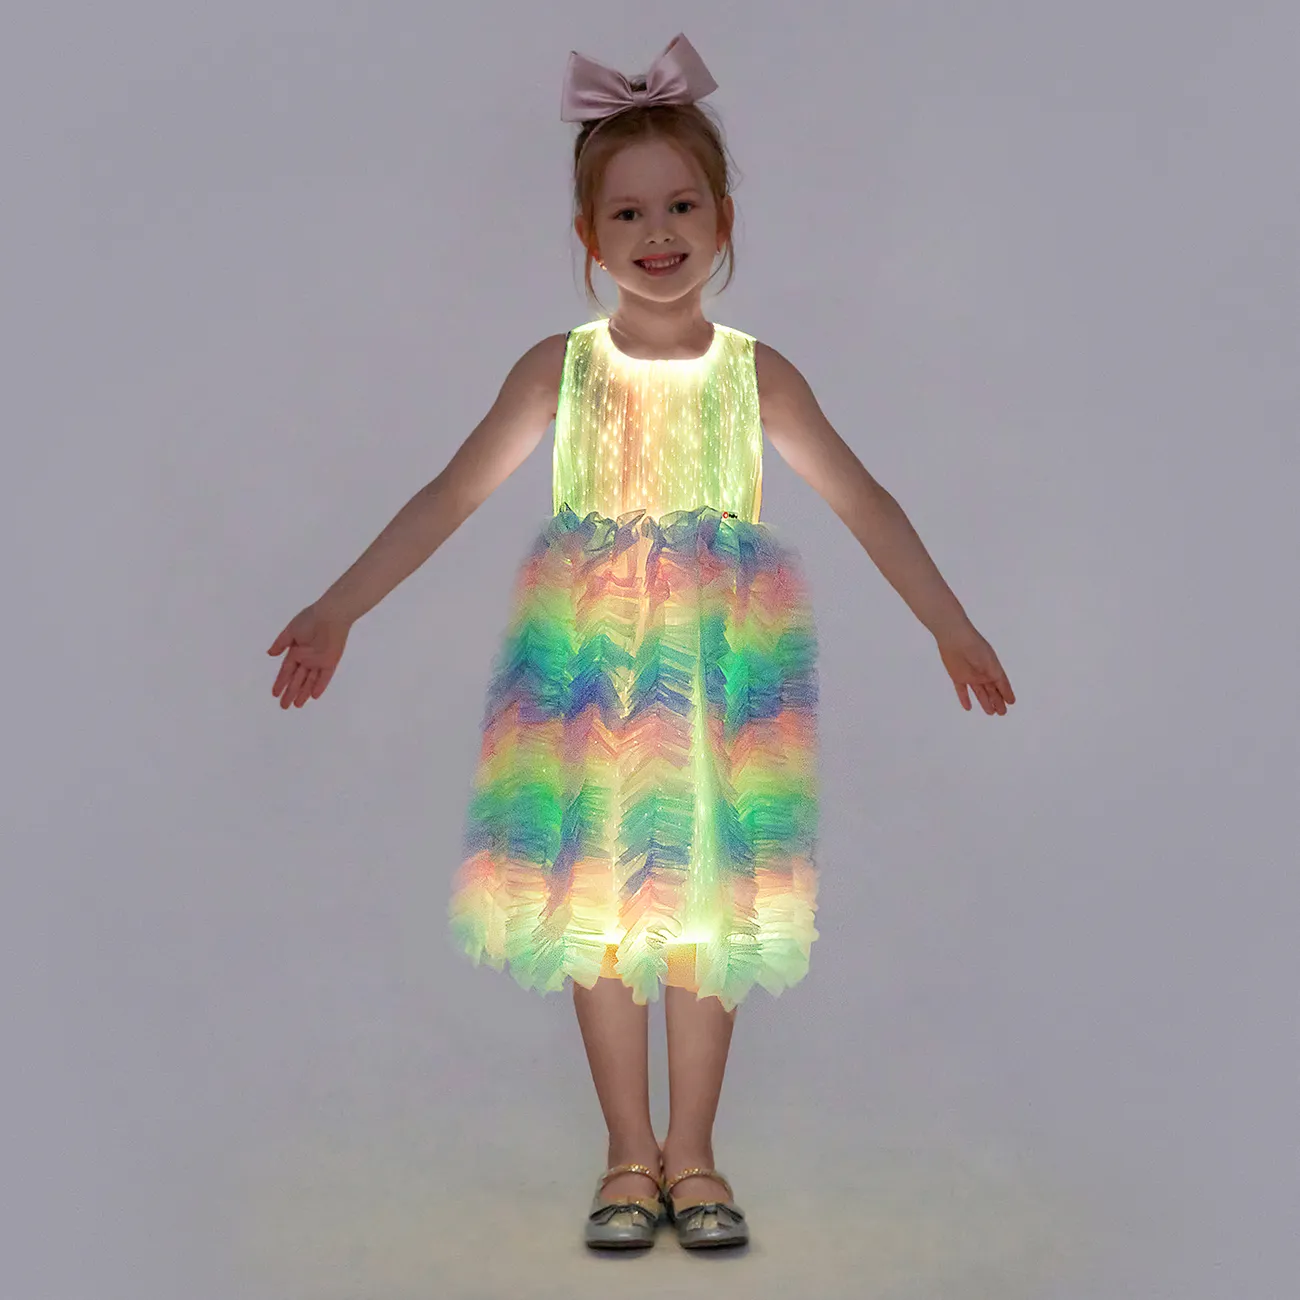 Go-Glow Light Up vestido de festa de princesa colorido com saia de babados, incluindo controlador (bateria embutida) Multicolorido big image 1